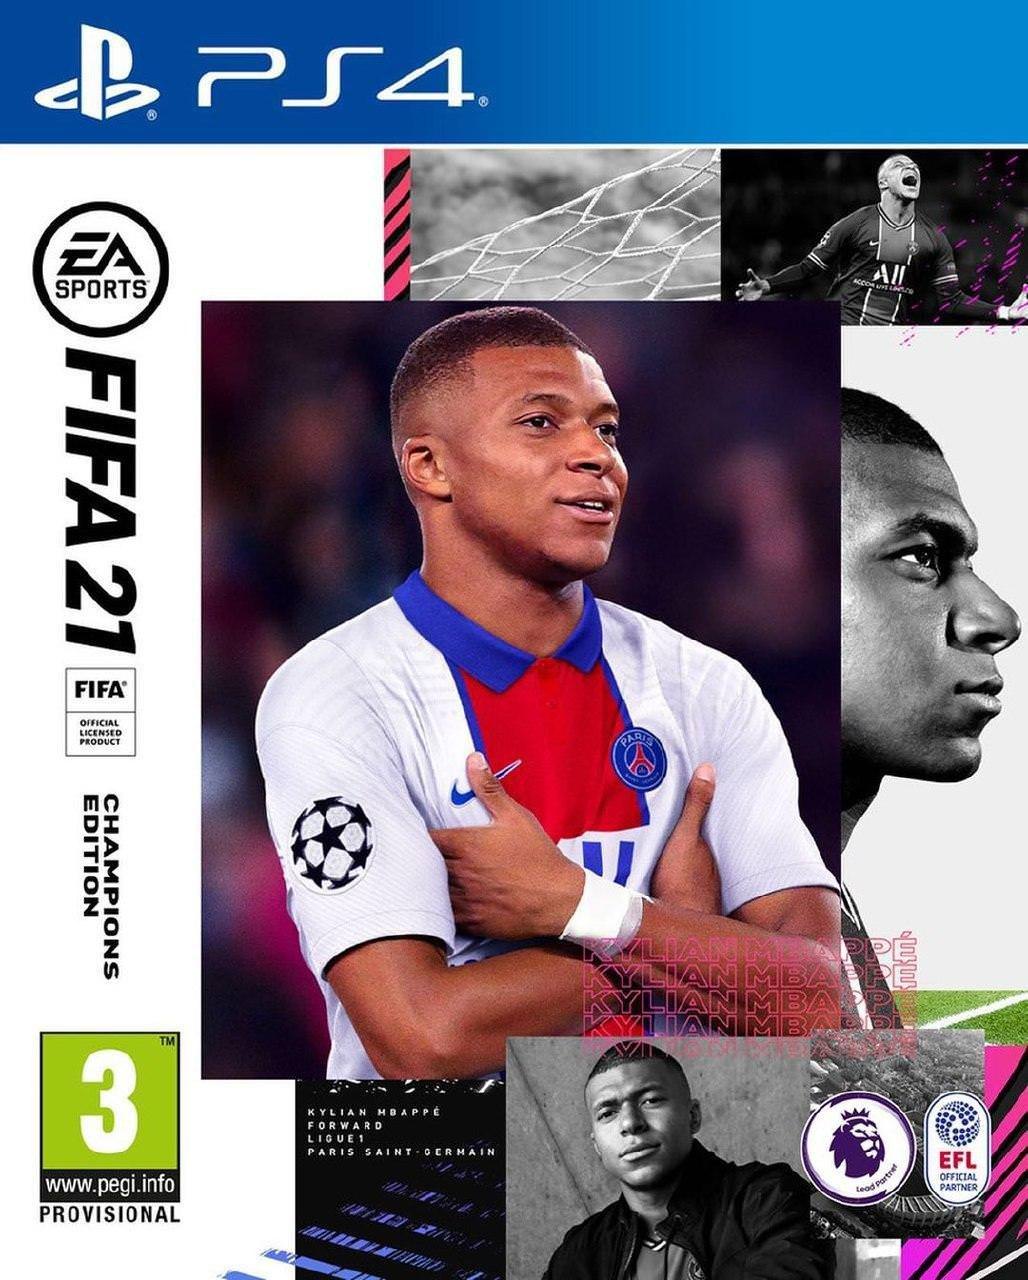 کیلیان امباپه روی جلد نسخه چمپیونز ادیشن بازی فیفا 21 / FIFA 21